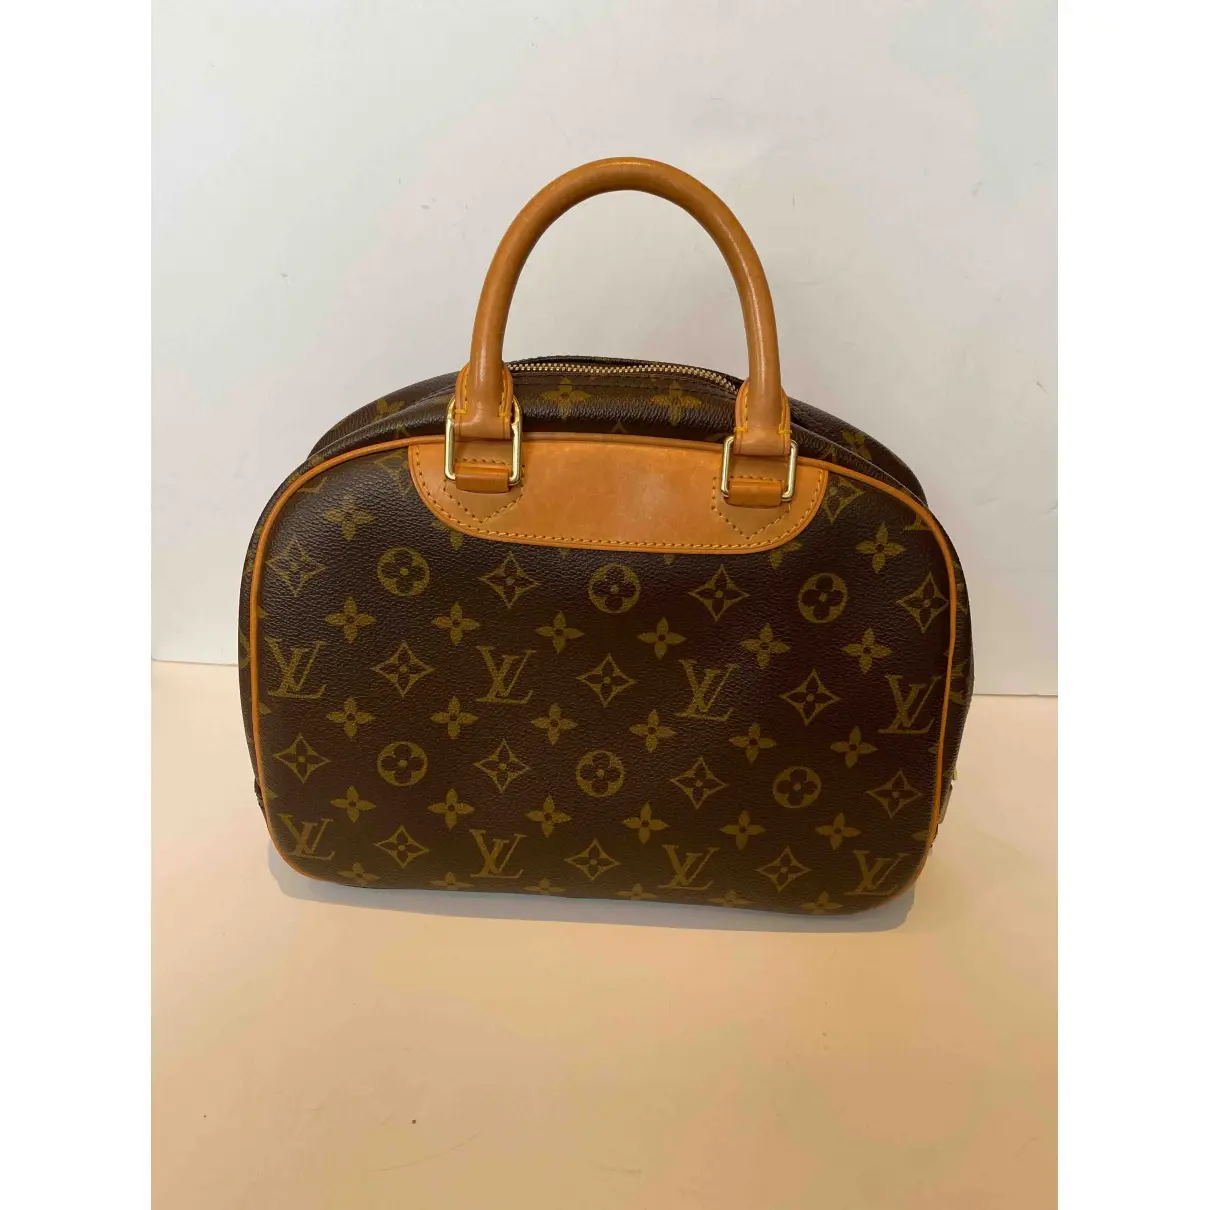 Buy Louis Vuitton Deauville l;eather handbag online